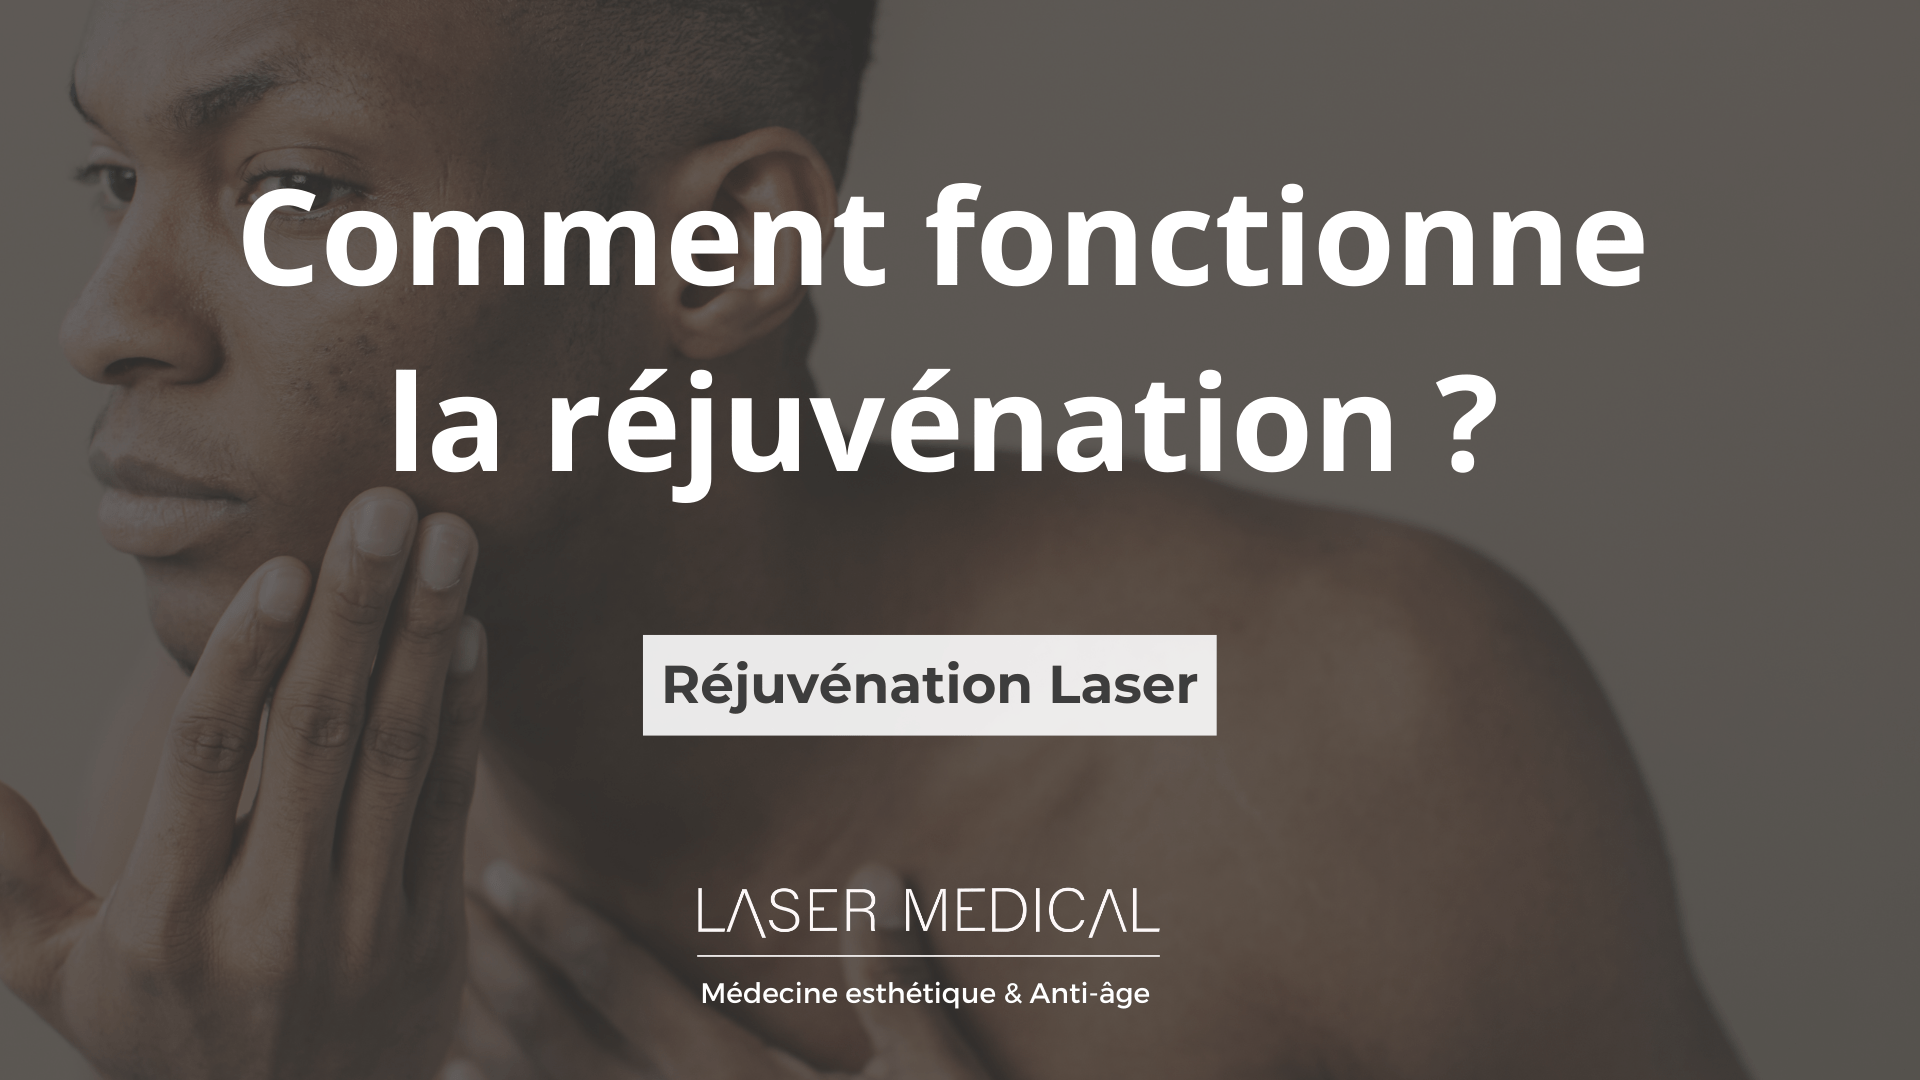 Rejuvénation Laser